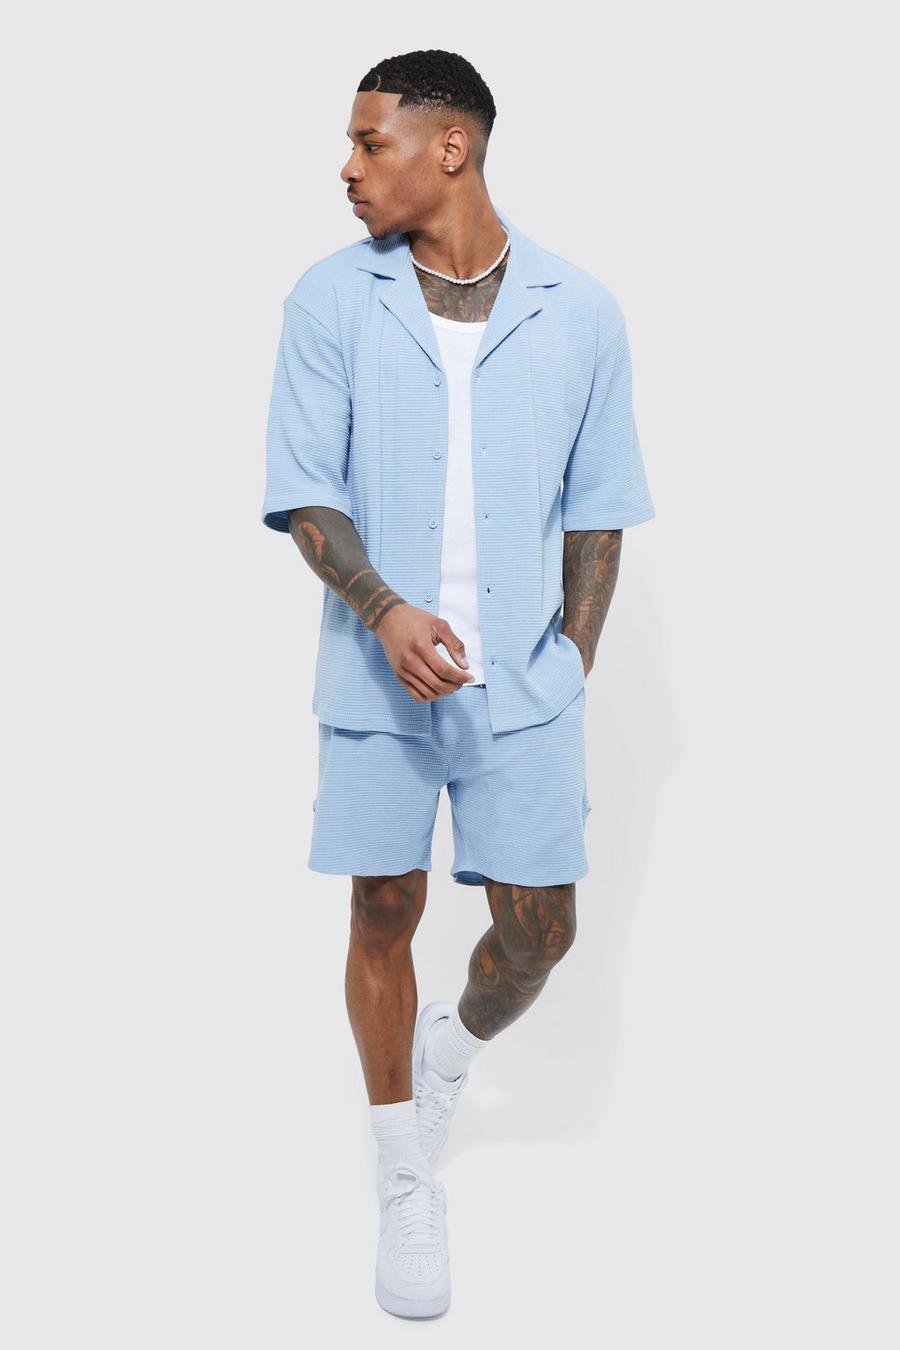 Pantalón corto y camisa de manga corta texturizada de tela jersey doble, Pale blue